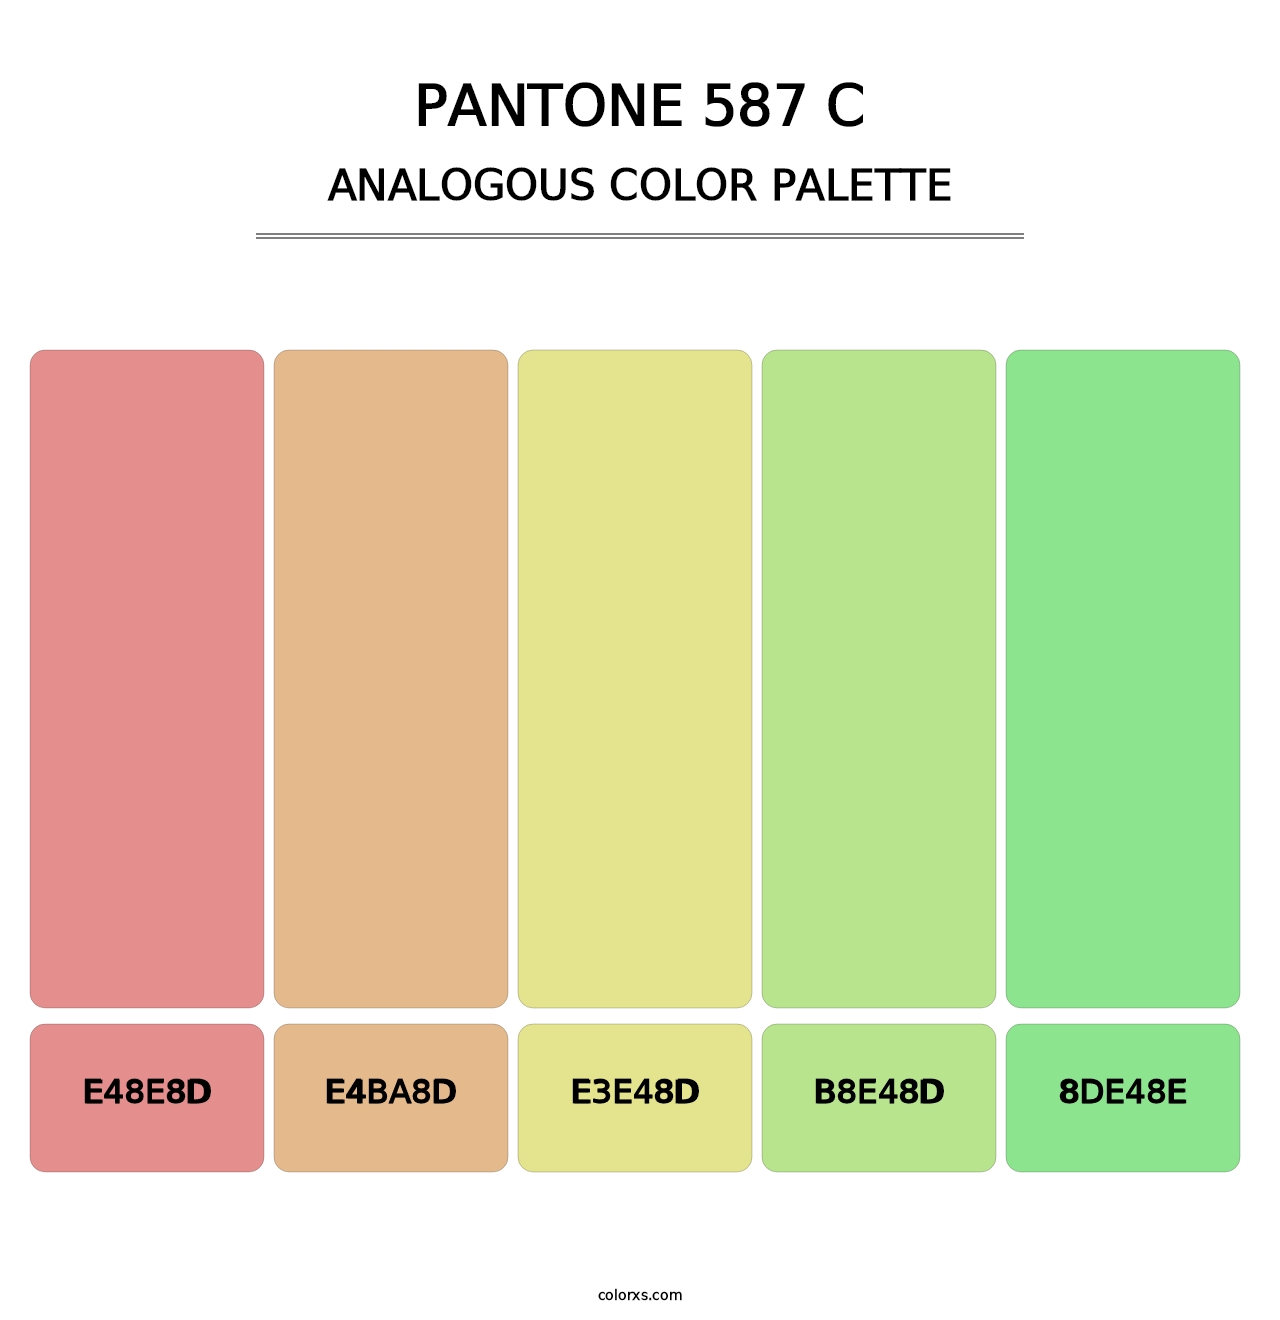 PANTONE 587 C - Analogous Color Palette